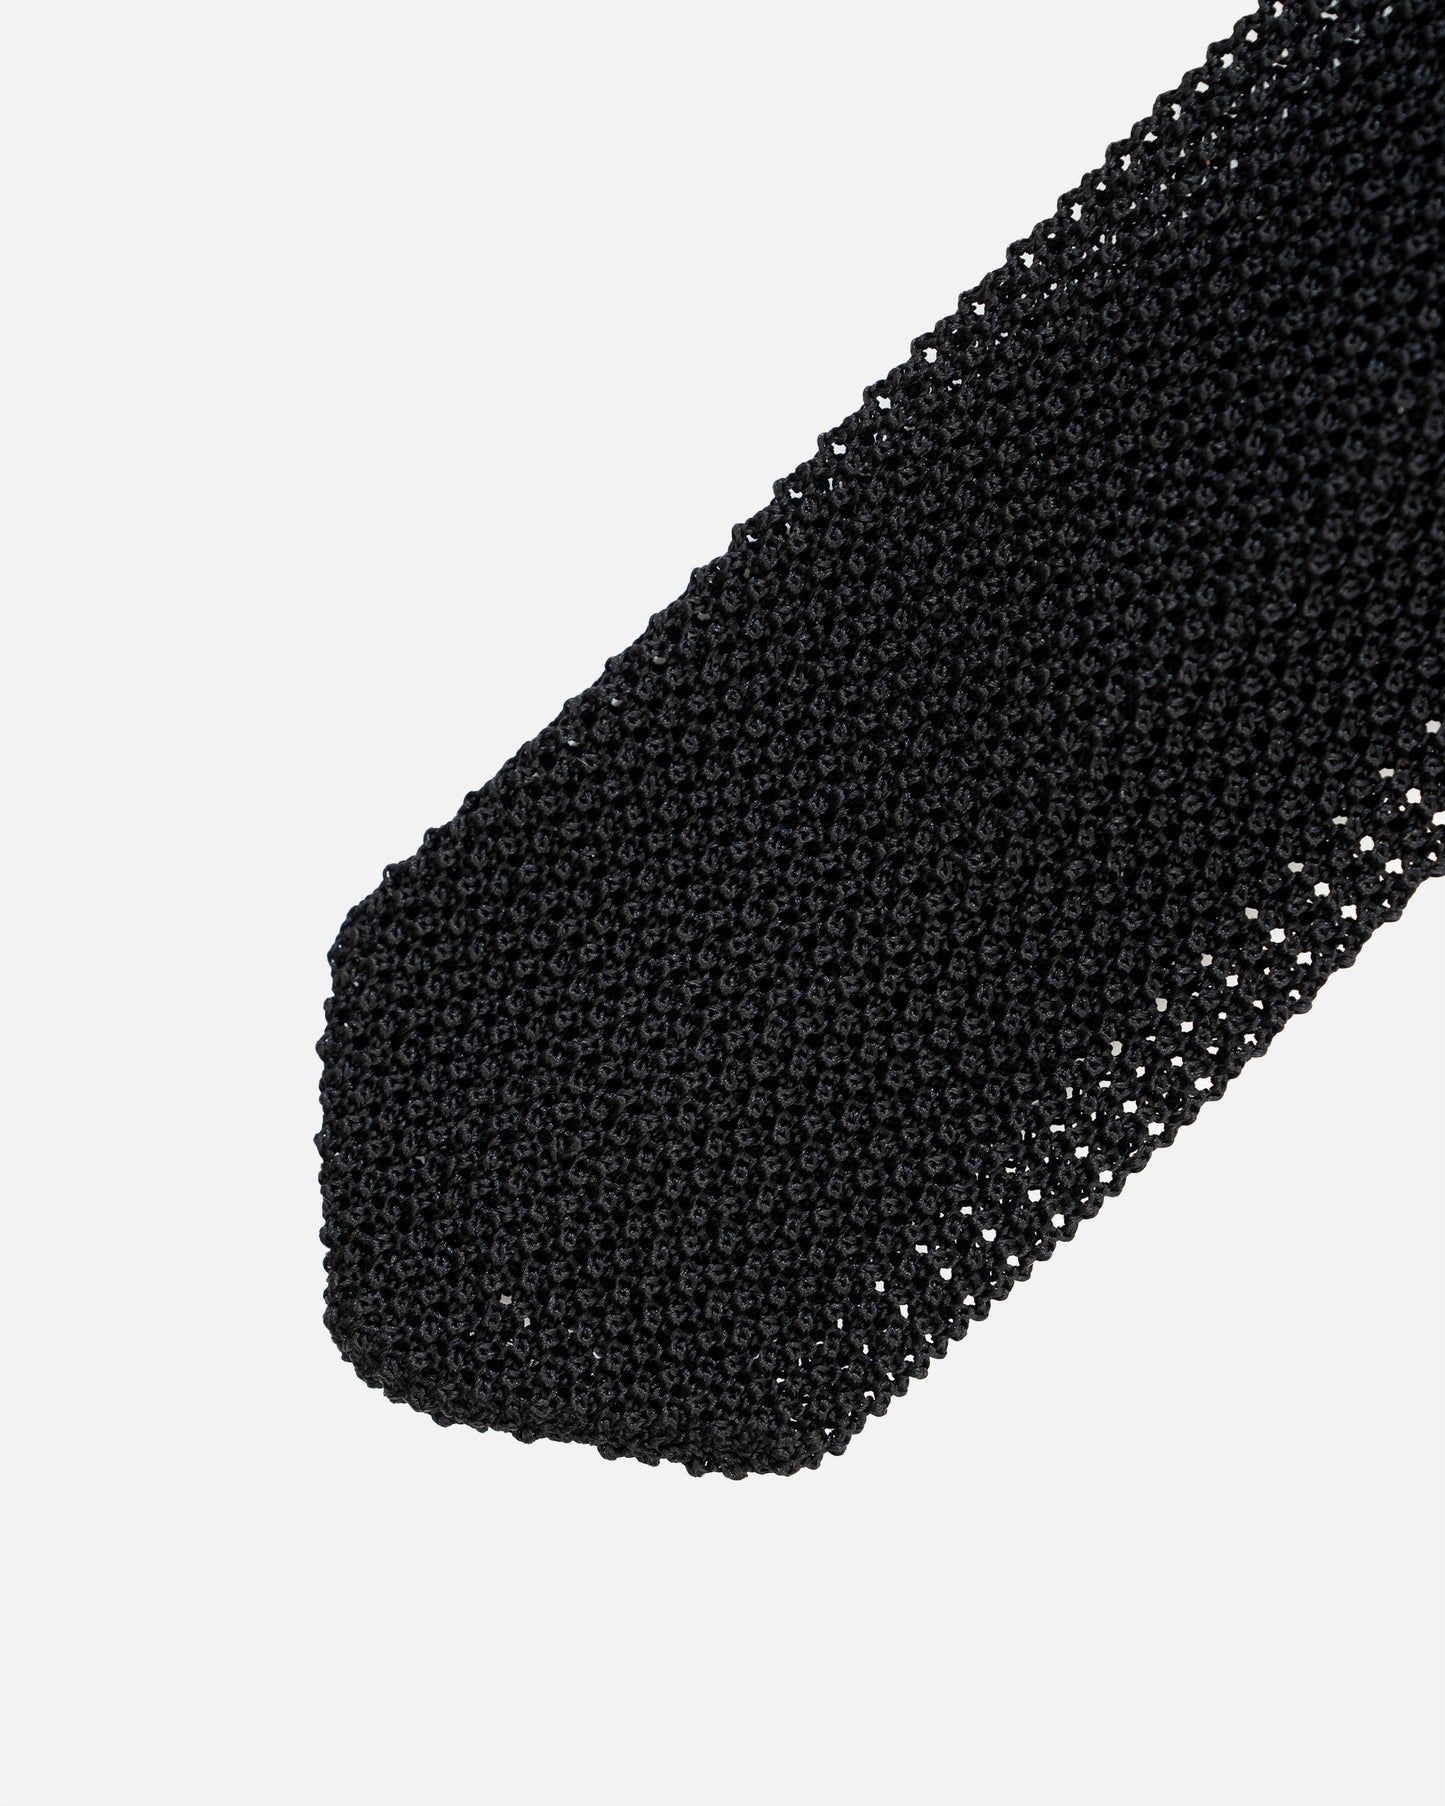 The Decorum Knit Tie in Black